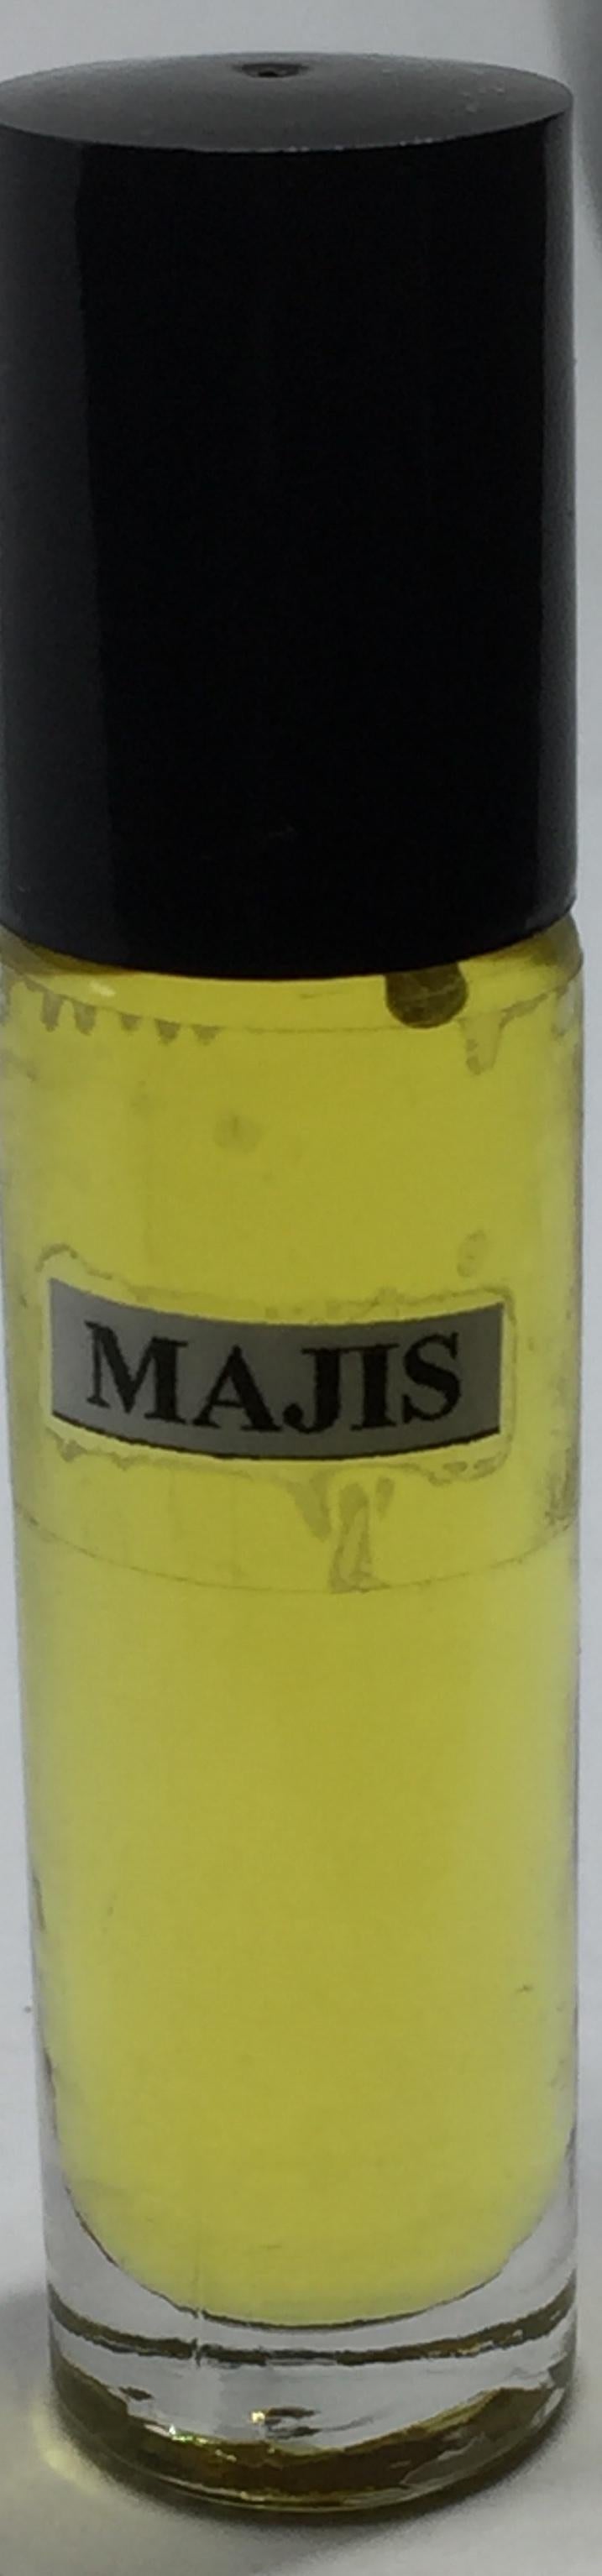 Majis Oil: Fragrance(Perfume)Body Oil